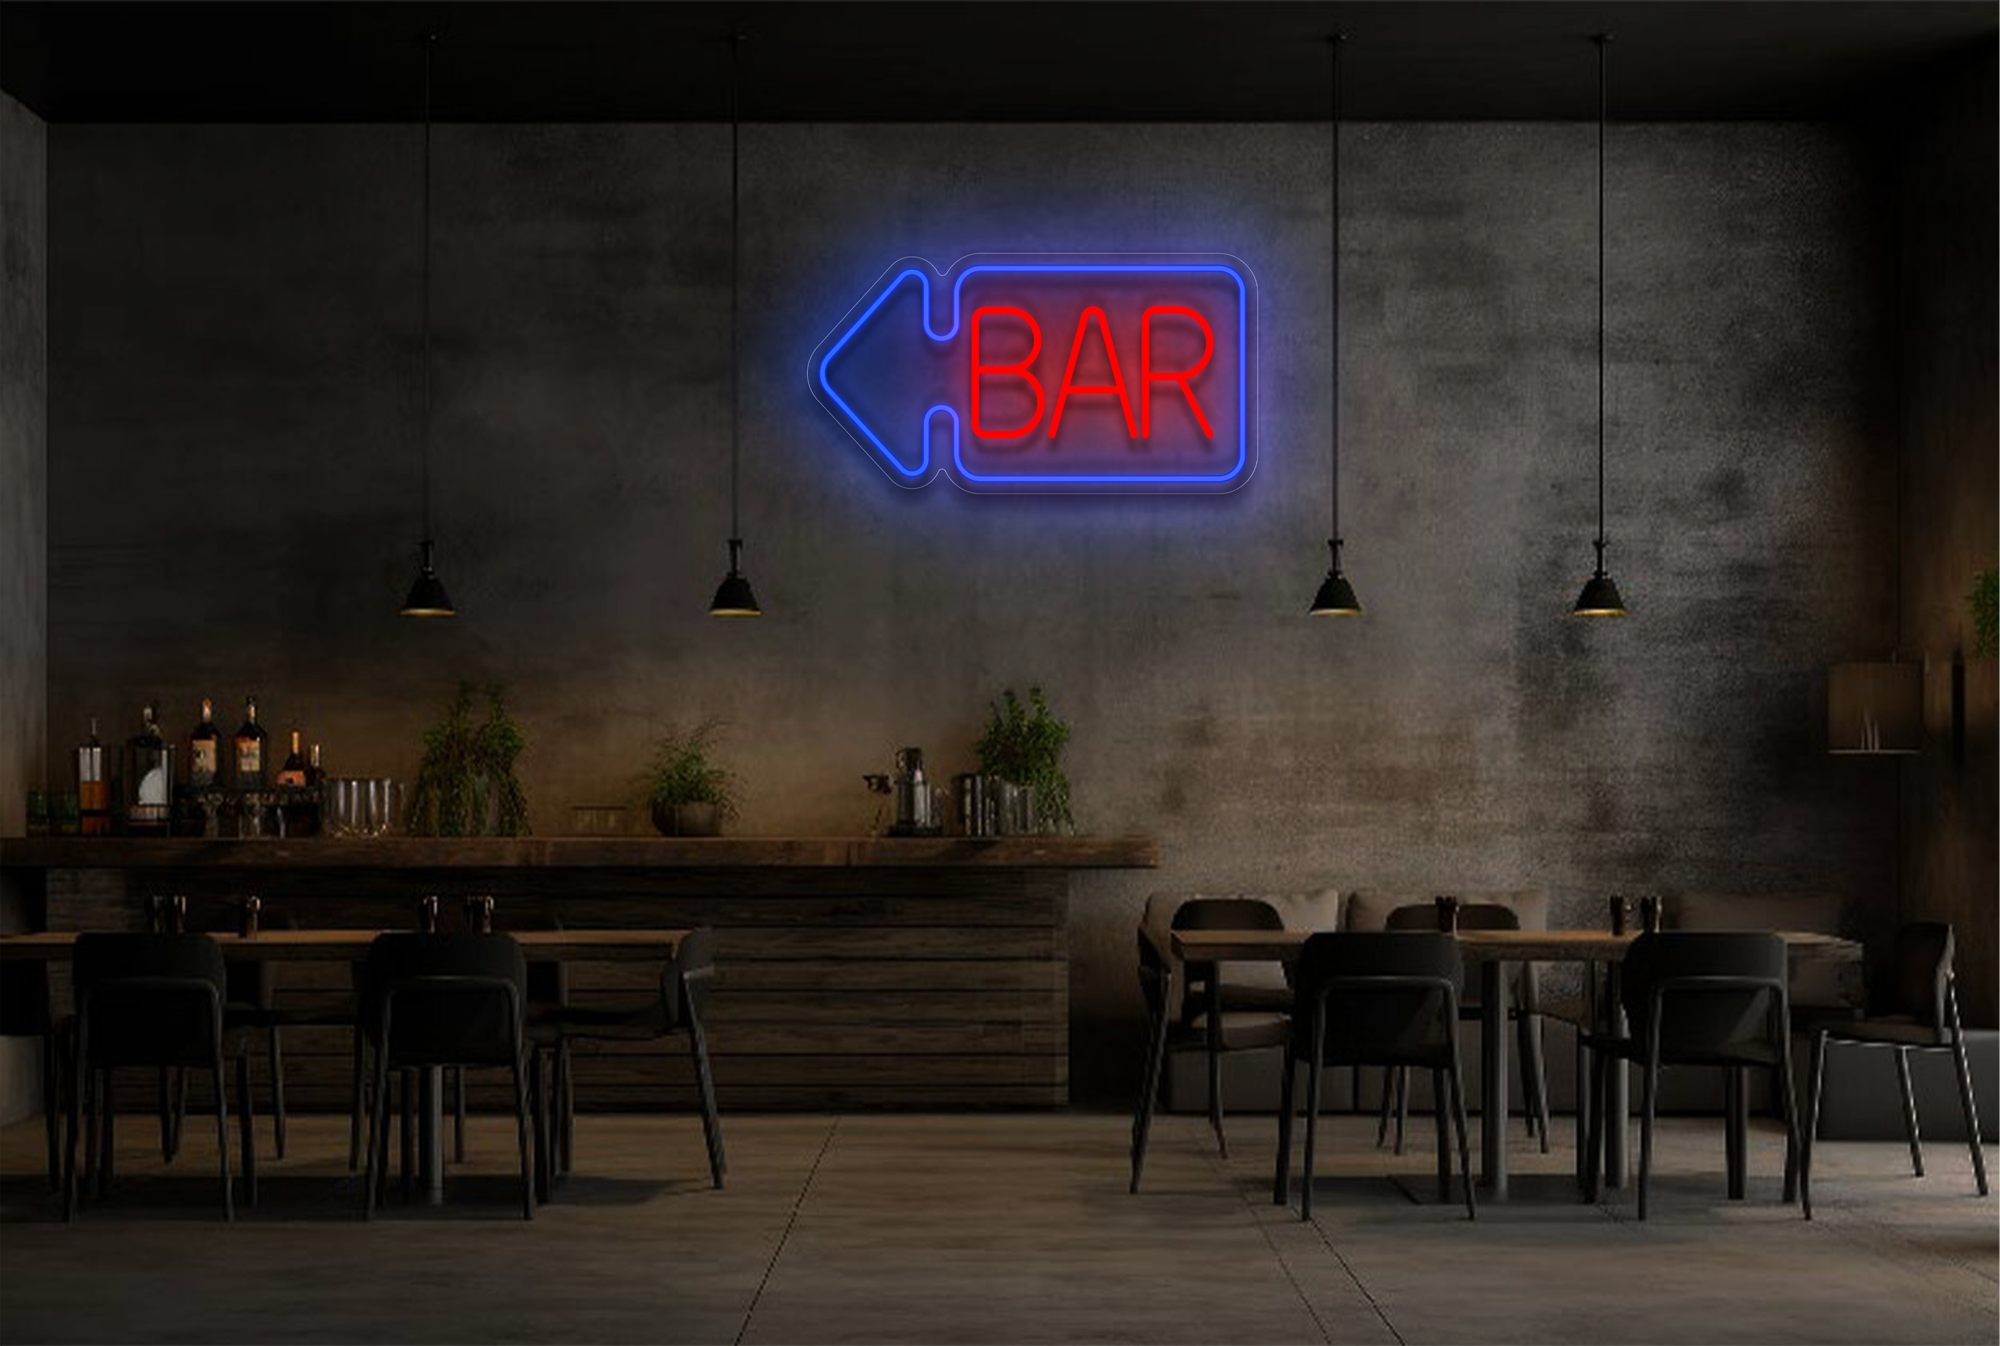 "BAR" with Arrow Border LED Neon Sign